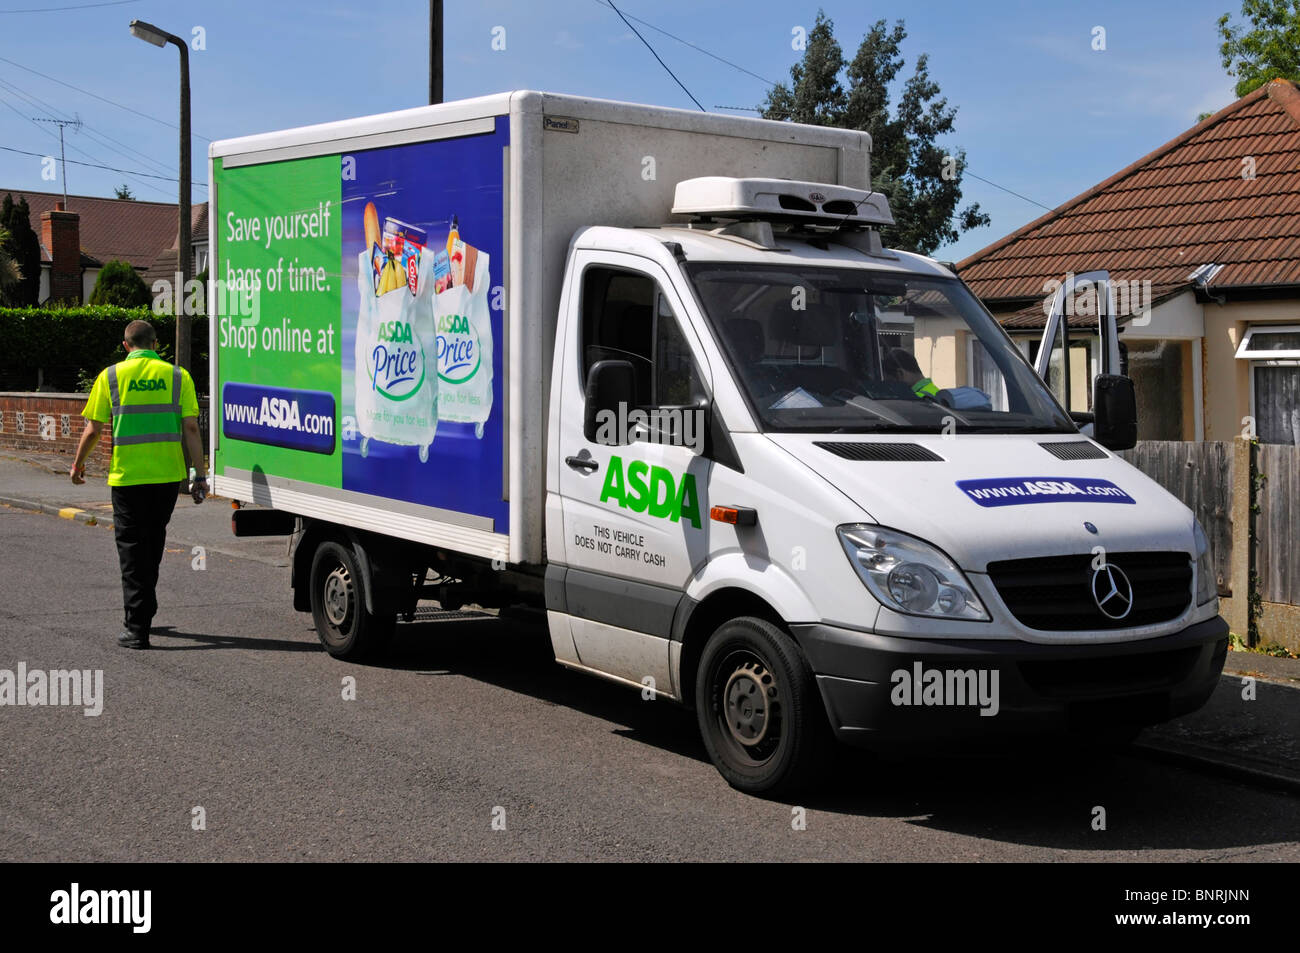 Asda supermarket business en ligne commande alimentaire en ligne livrée par chauffeur de fourgonnette garée dans la rue à la maison des clients faisant la livraison Angleterre Royaume-Uni Banque D'Images